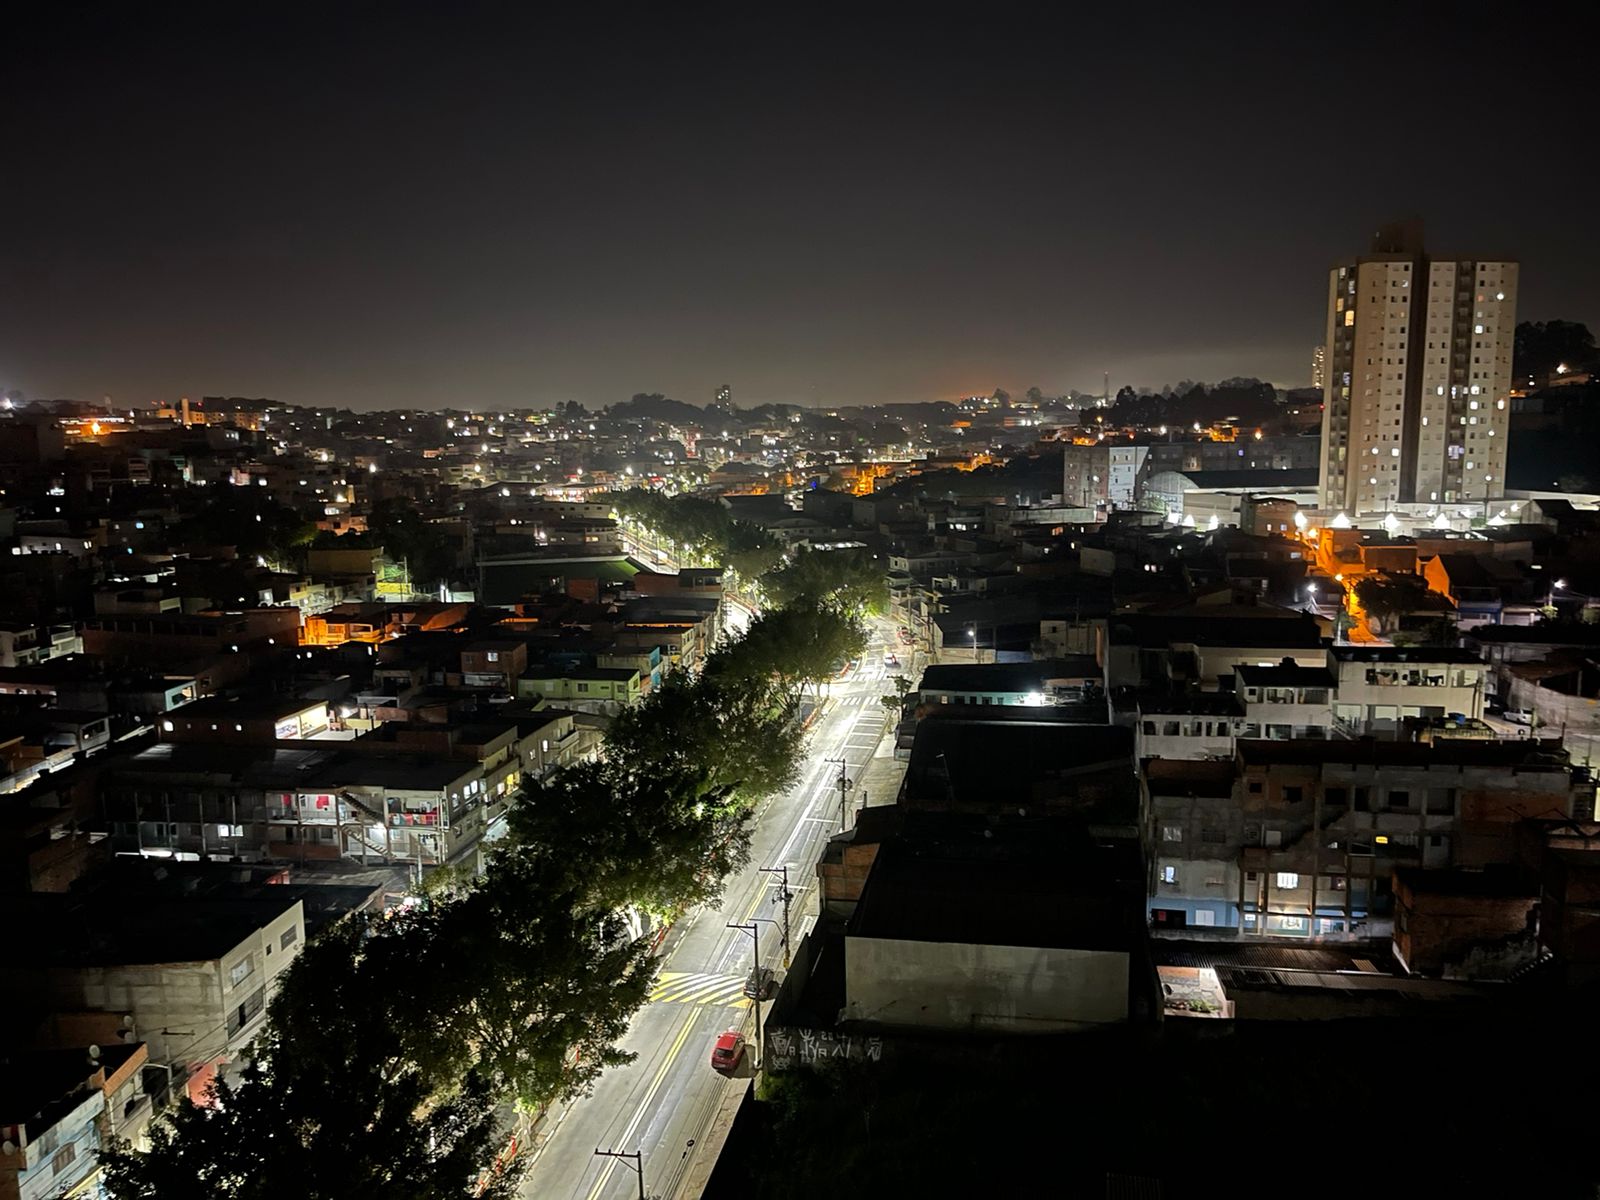 FOTO - Prefeitura de Taboão da Serra moderniza iluminação pública com o programa “LED no meu bairro”